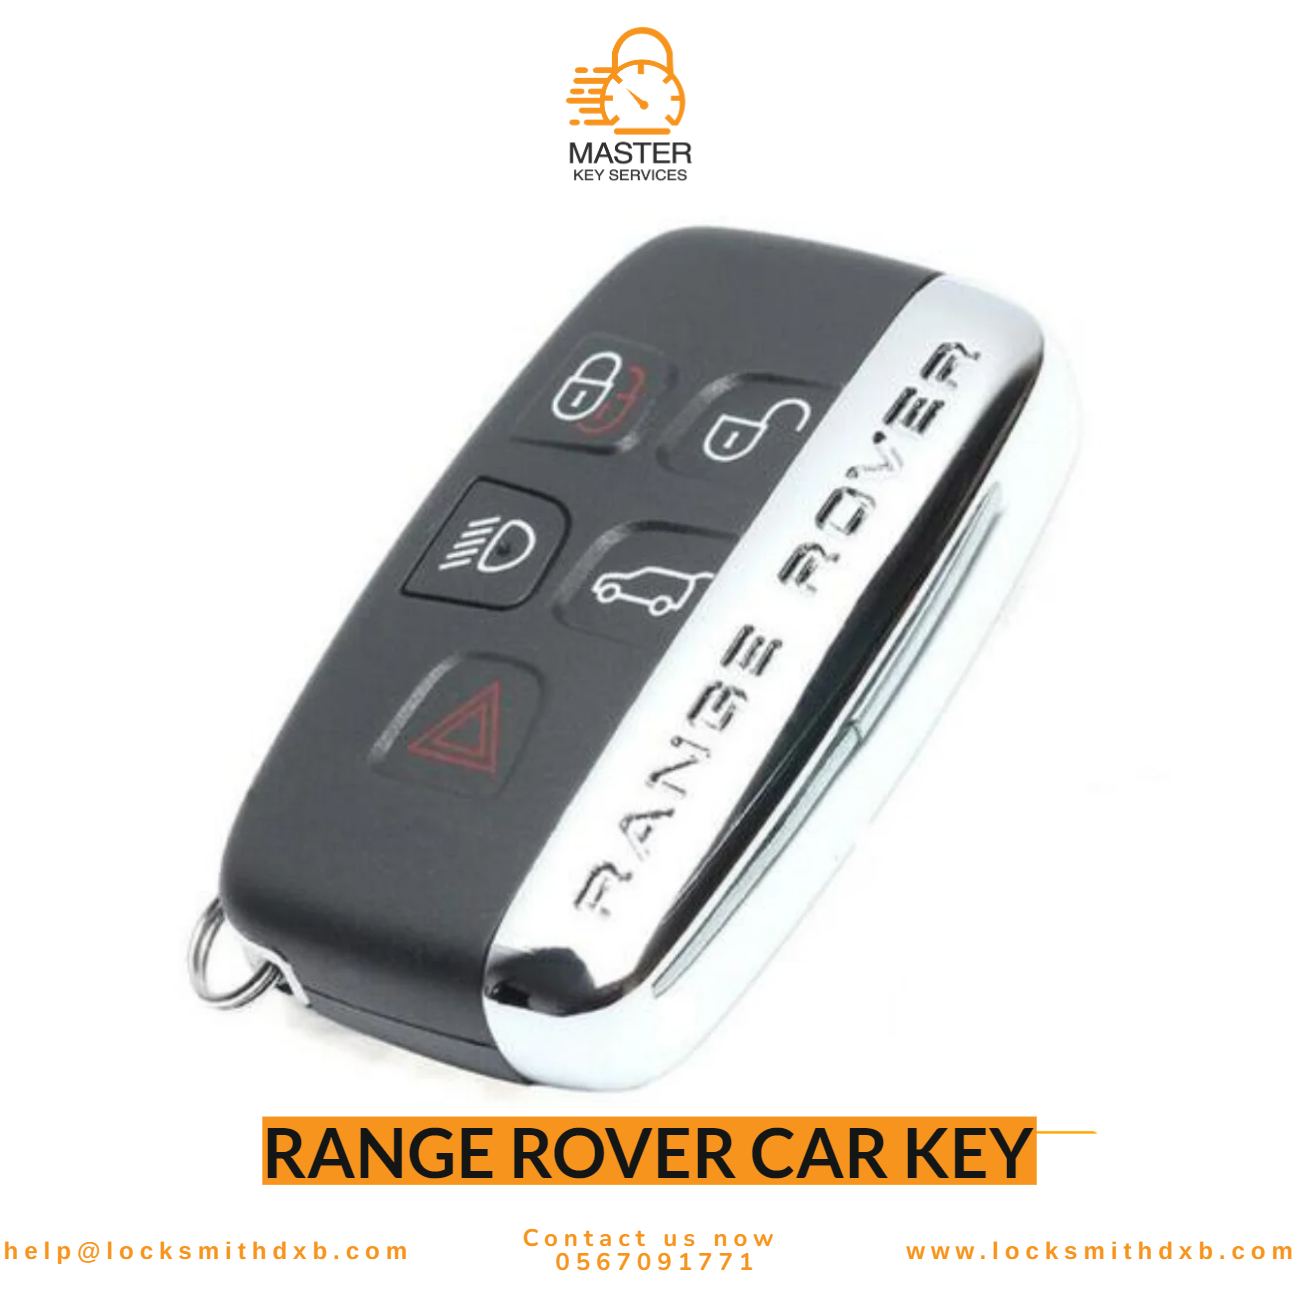 Range Rover car key